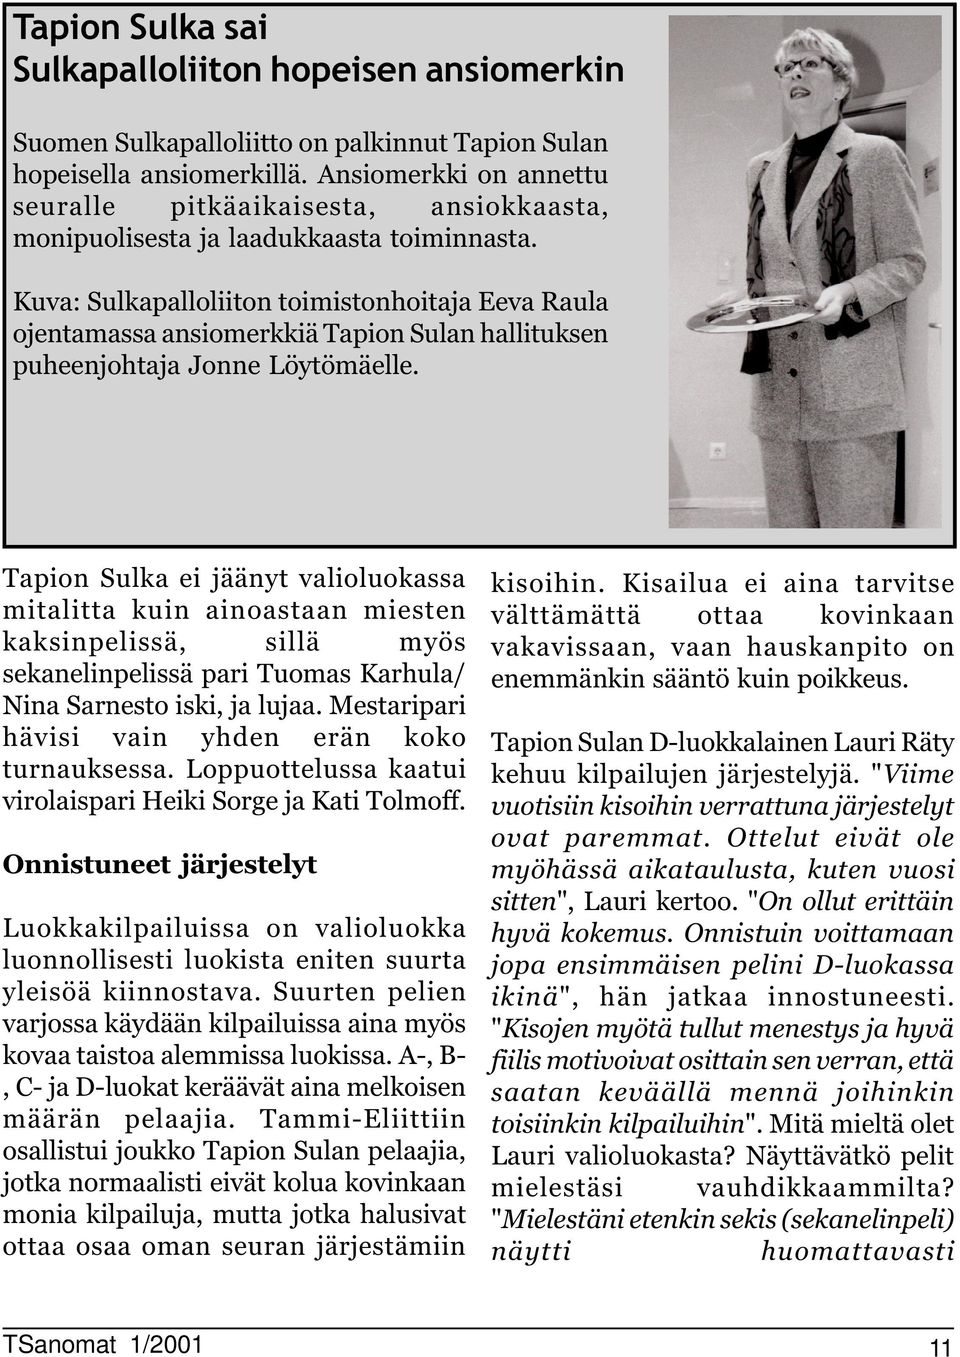 Kuva: Sulkapalloliiton toimistonhoitaja Eeva Raula ojentamassa ansiomerkkiä Tapion Sulan hallituksen puheenjohtaja Jonne Löytömäelle.